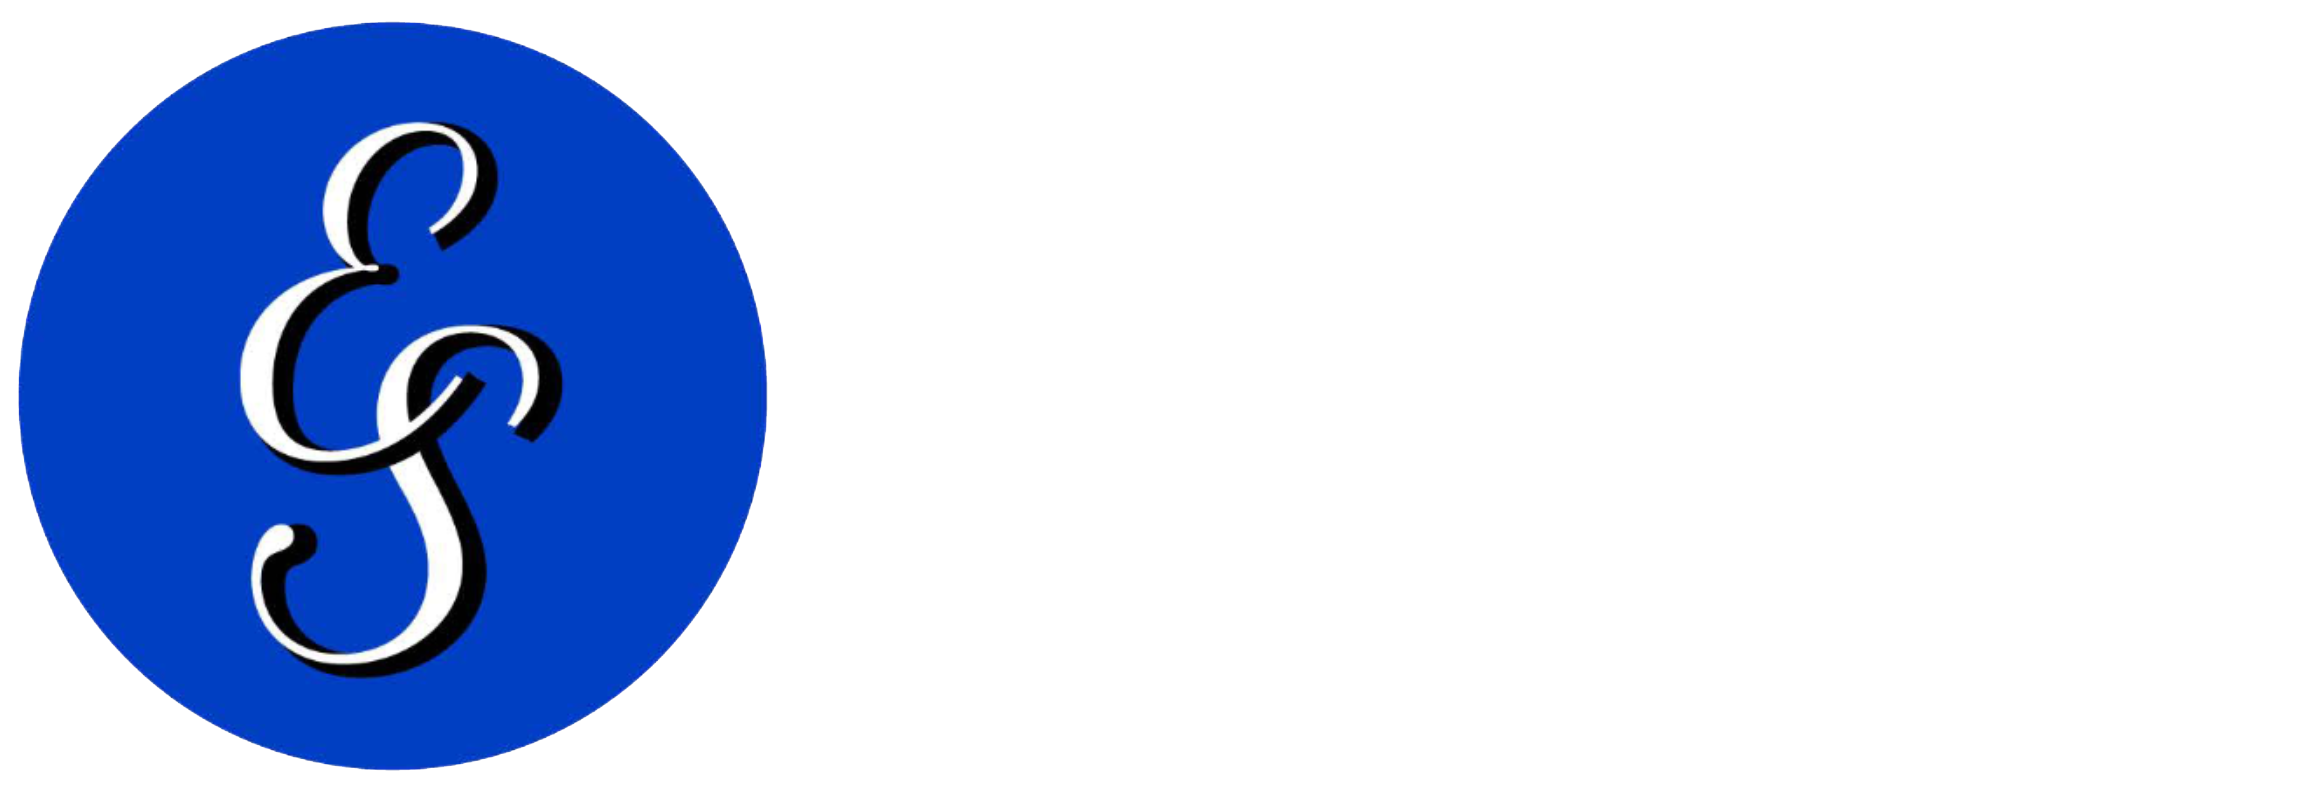 The Empowerment Spot